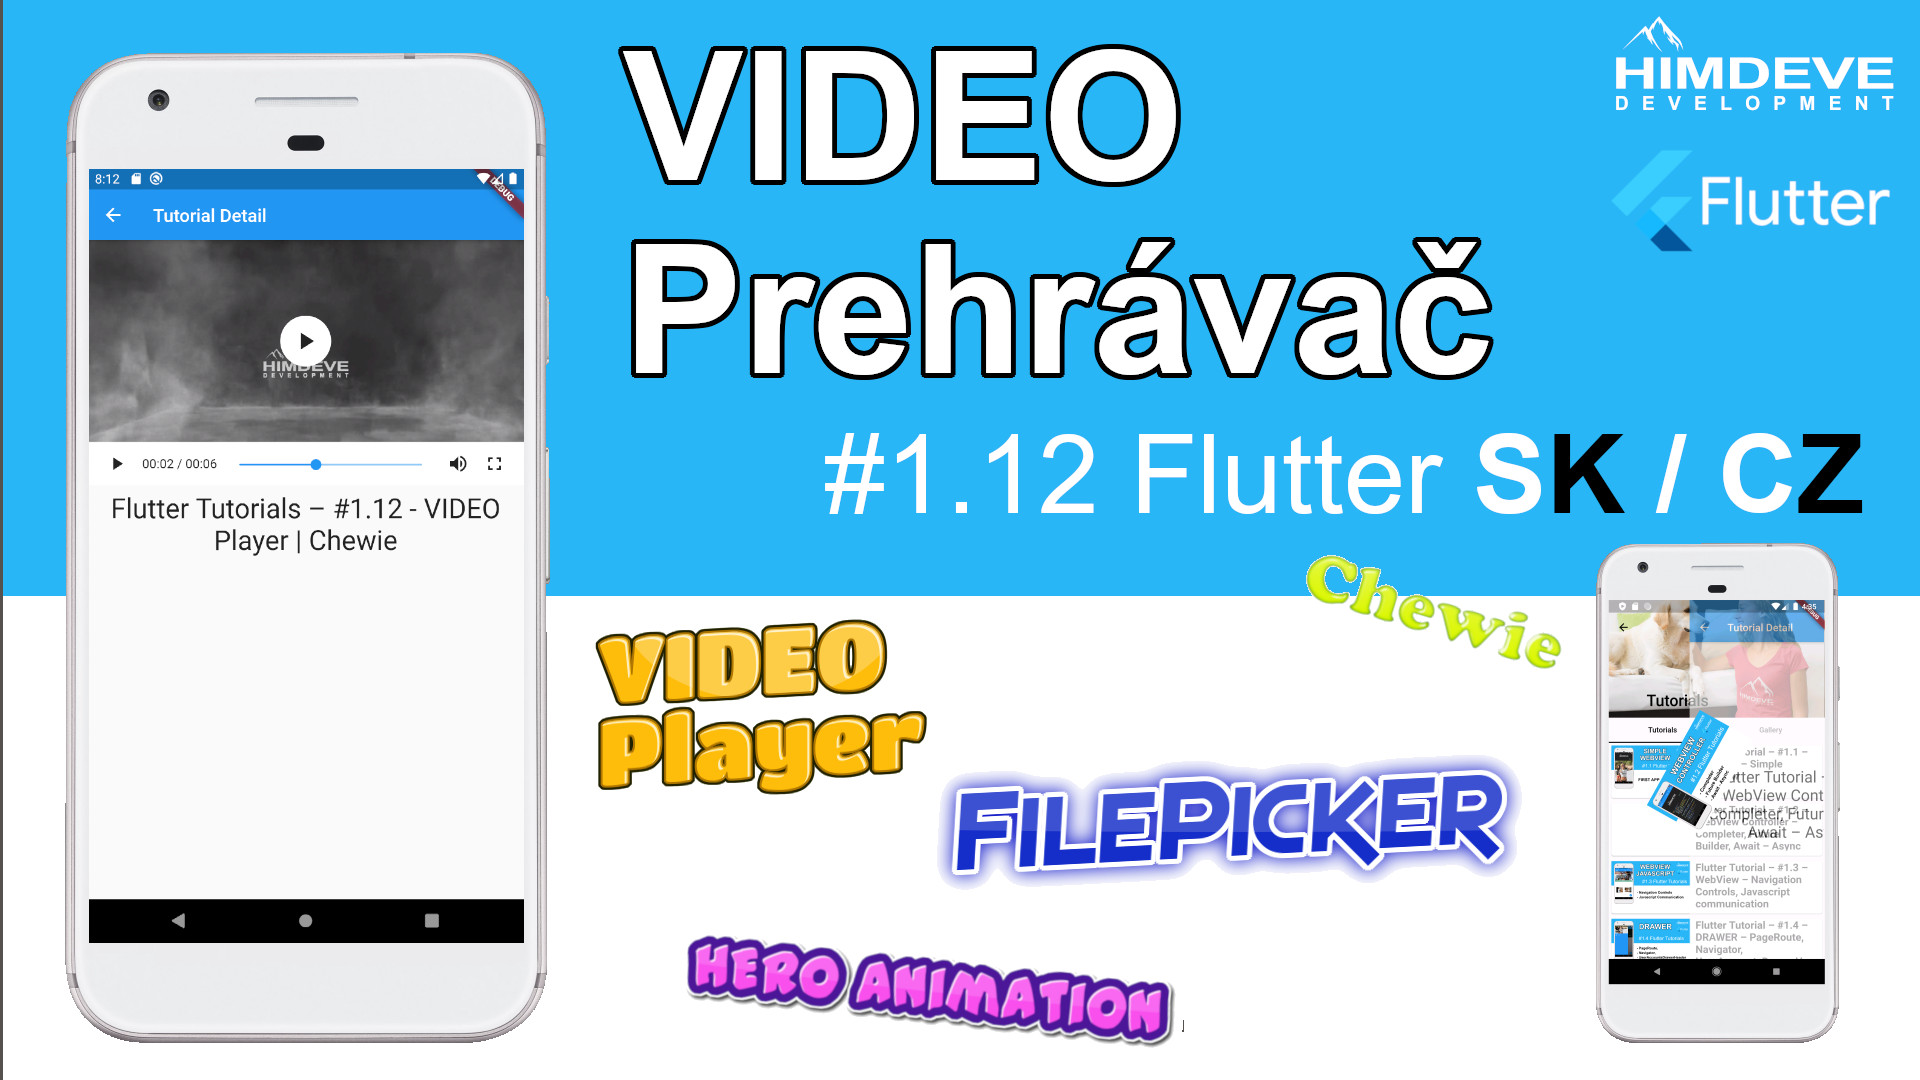 Himdeve tutorial 1.12 - video prehravac